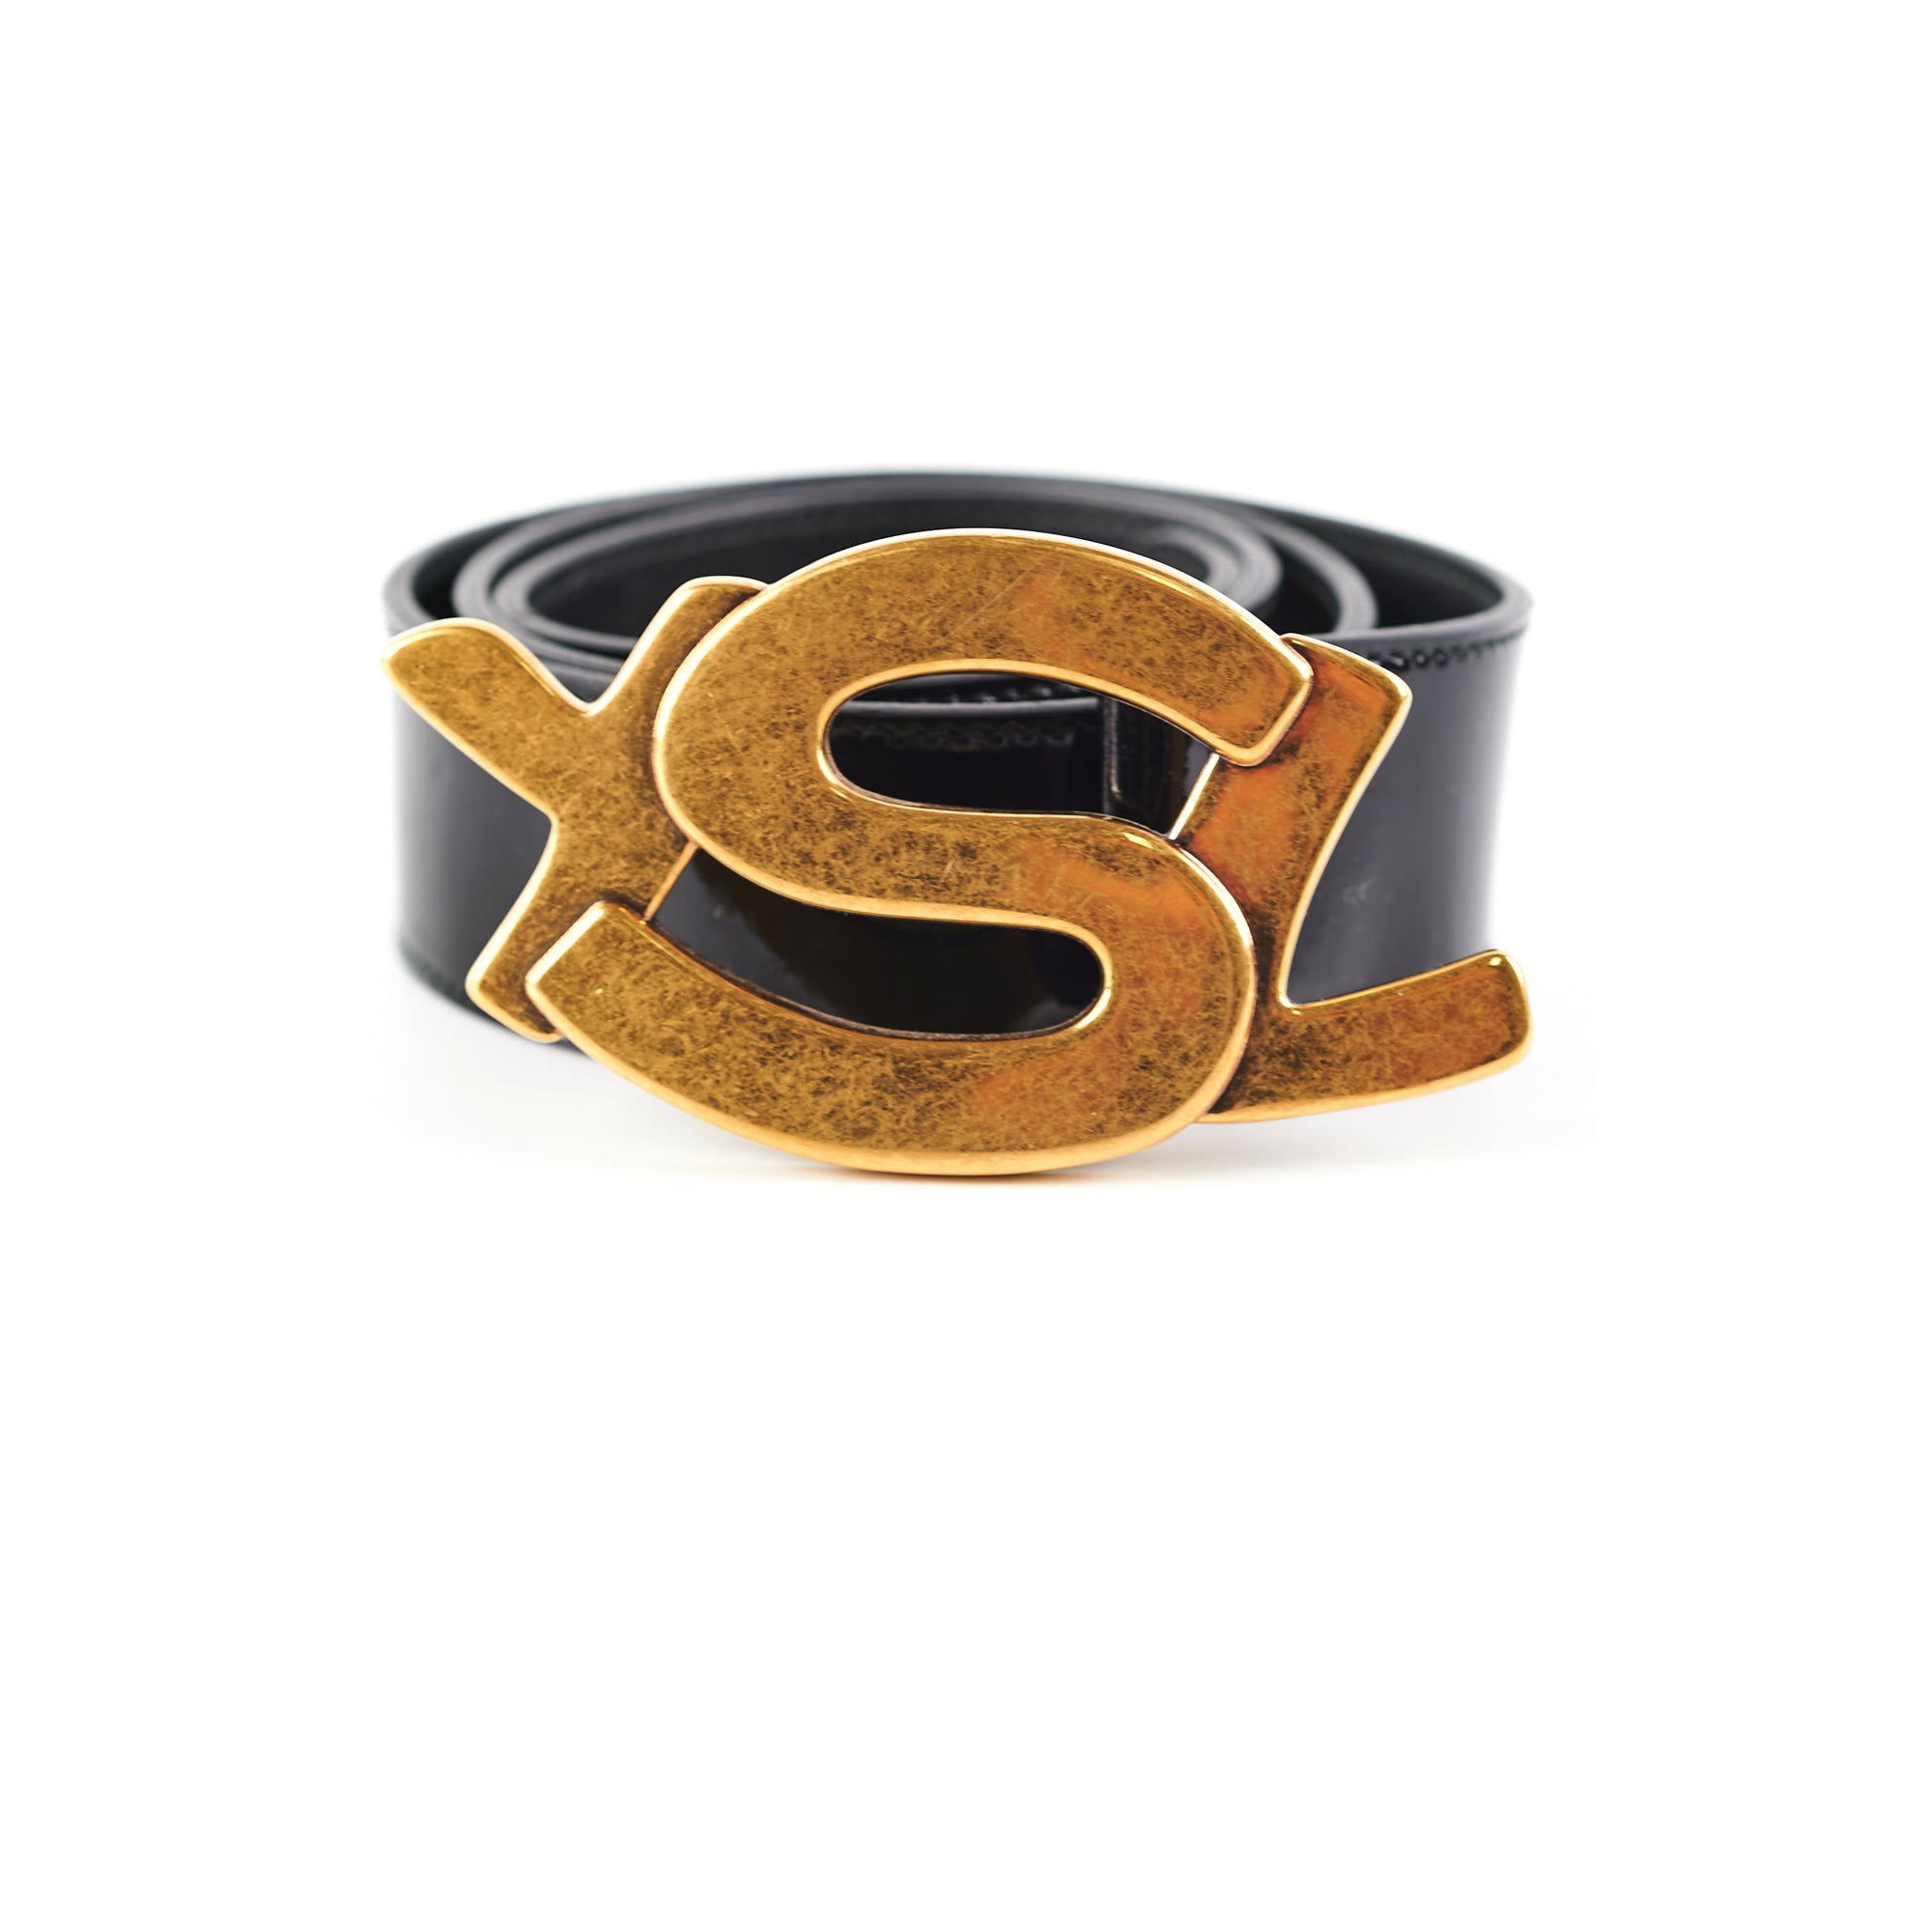 Saint Laurent Black Patent YSL Gold Enamel Buckle Belt - THE PURSE AFFAIR